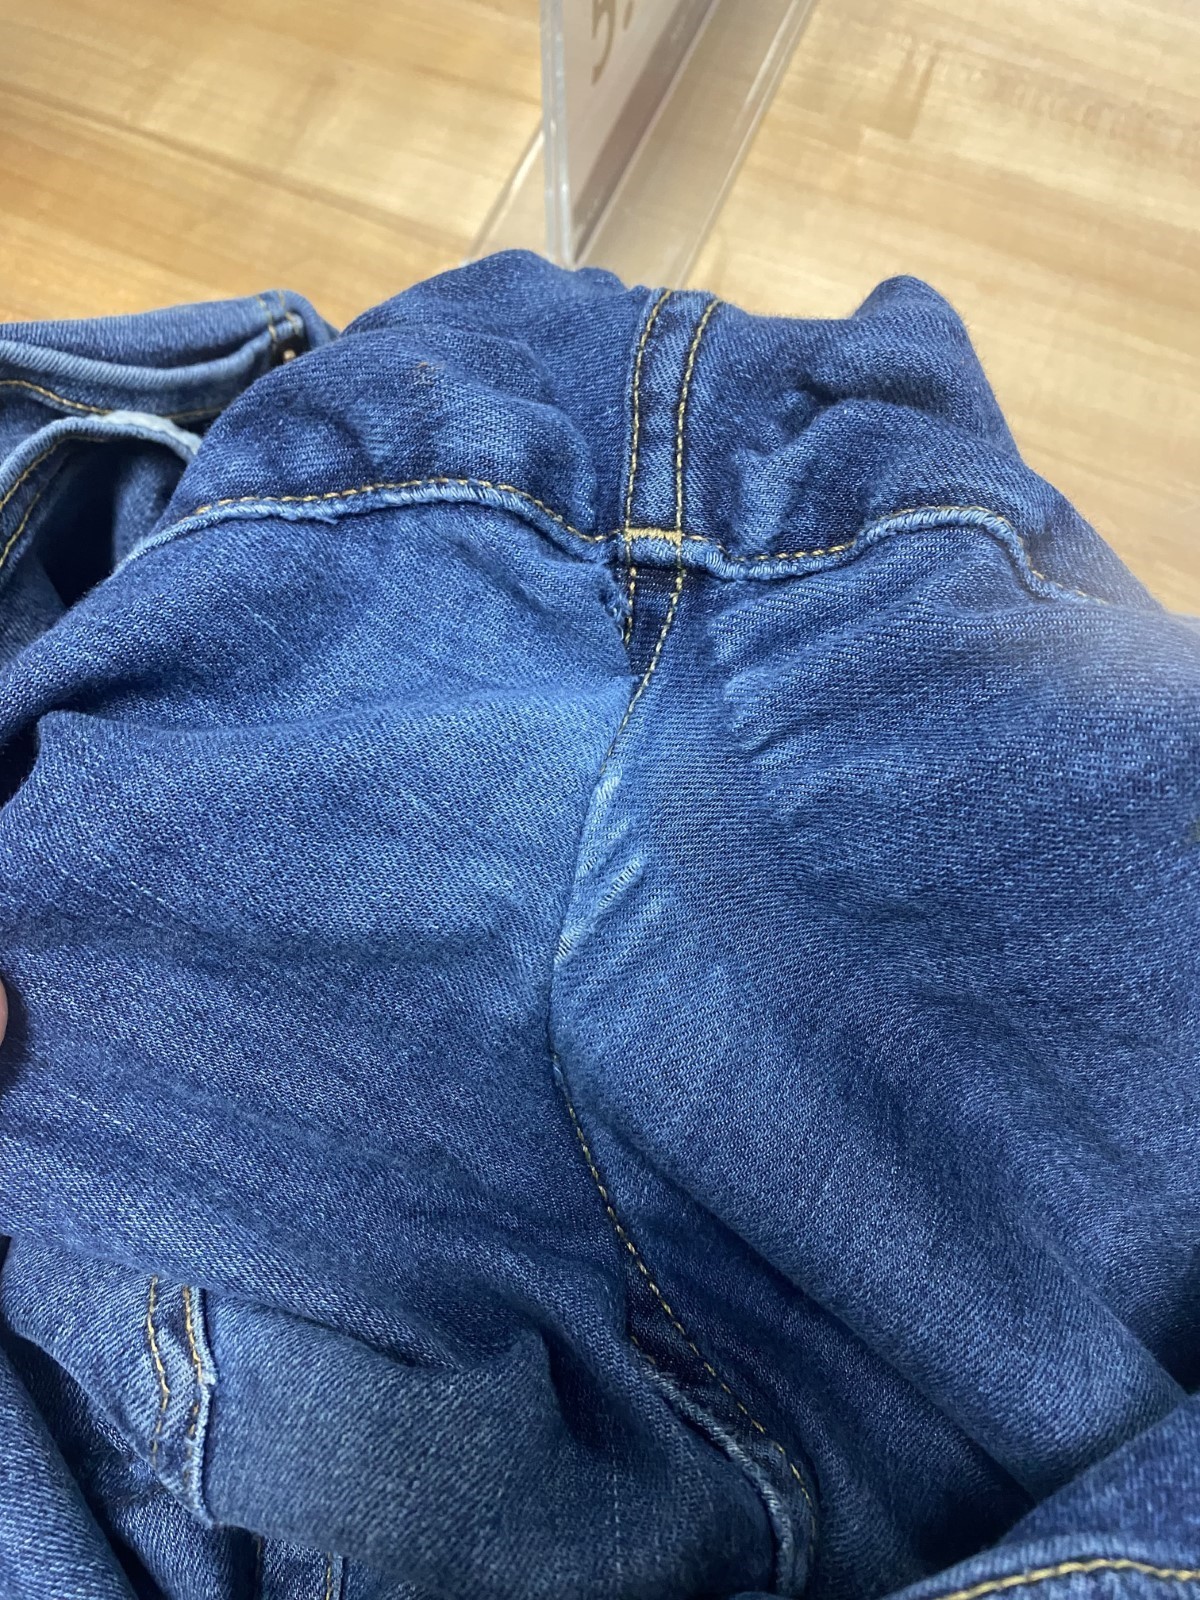 exterior center seam of denim jeans 